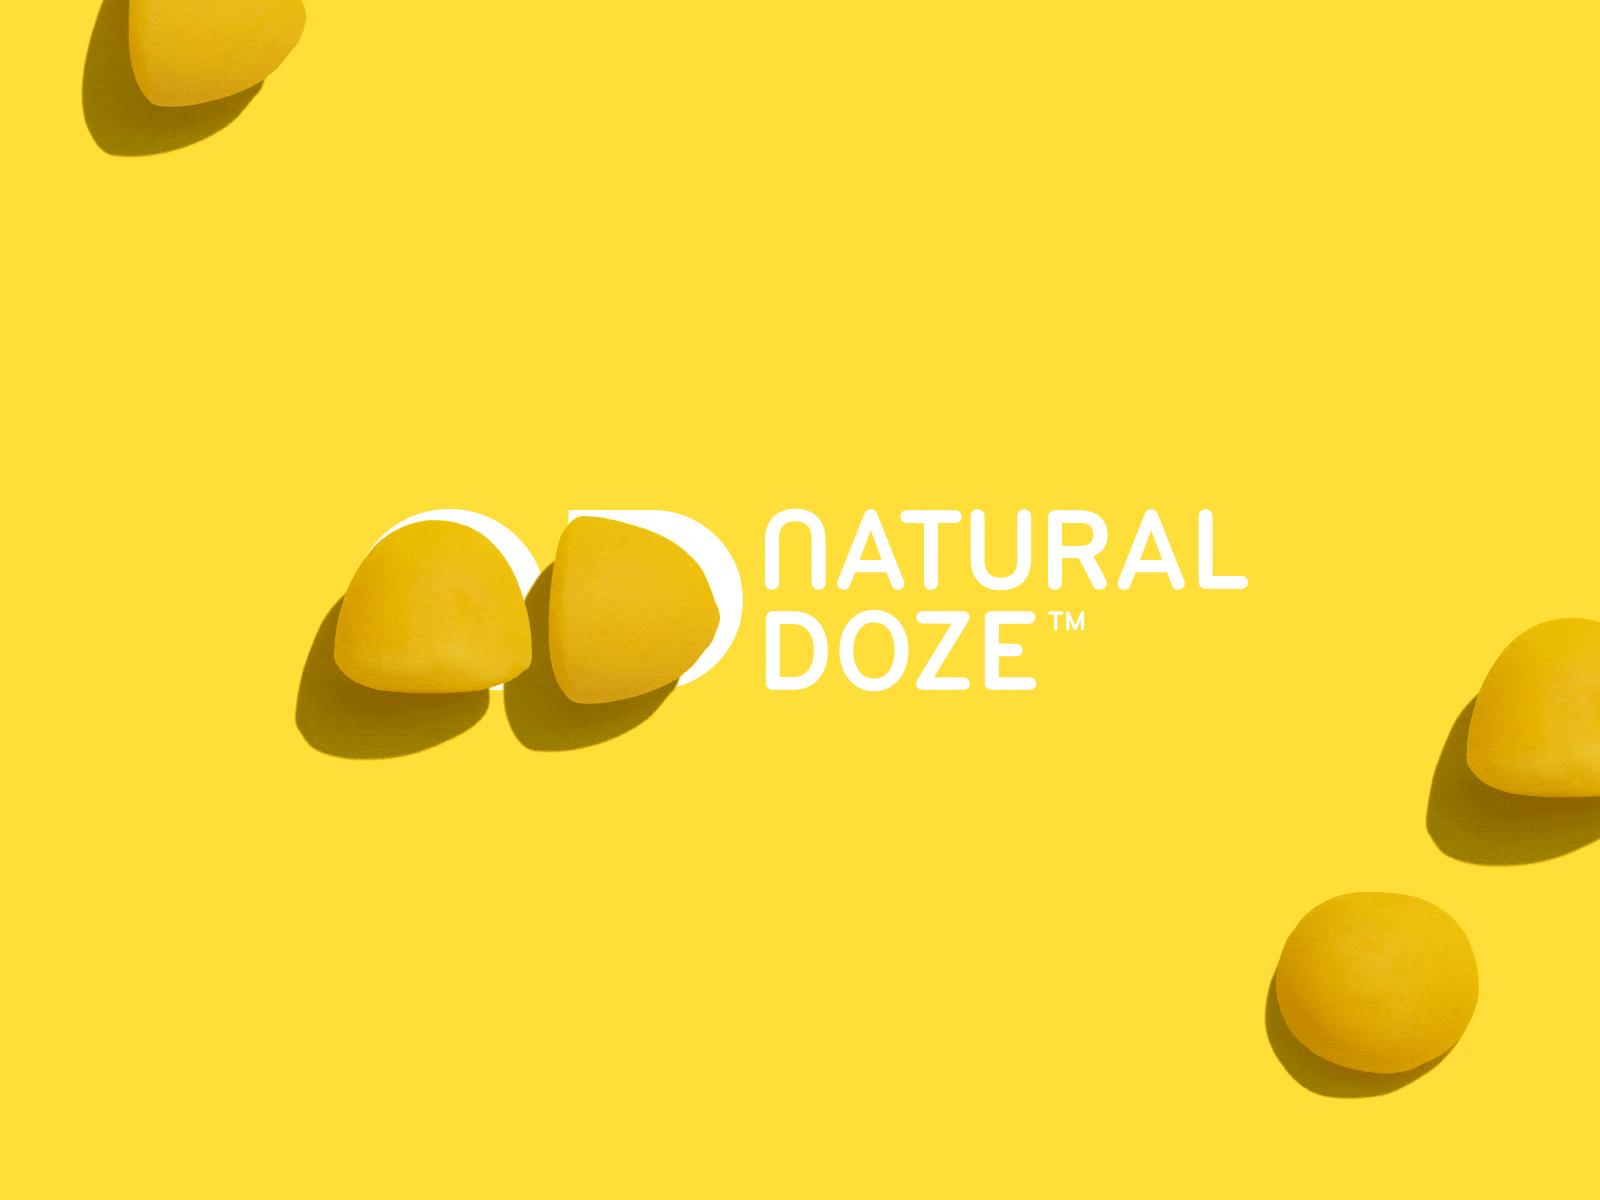 Das Natural Doze Logo setzt sich aus zwei der Vitamindrops zusammen